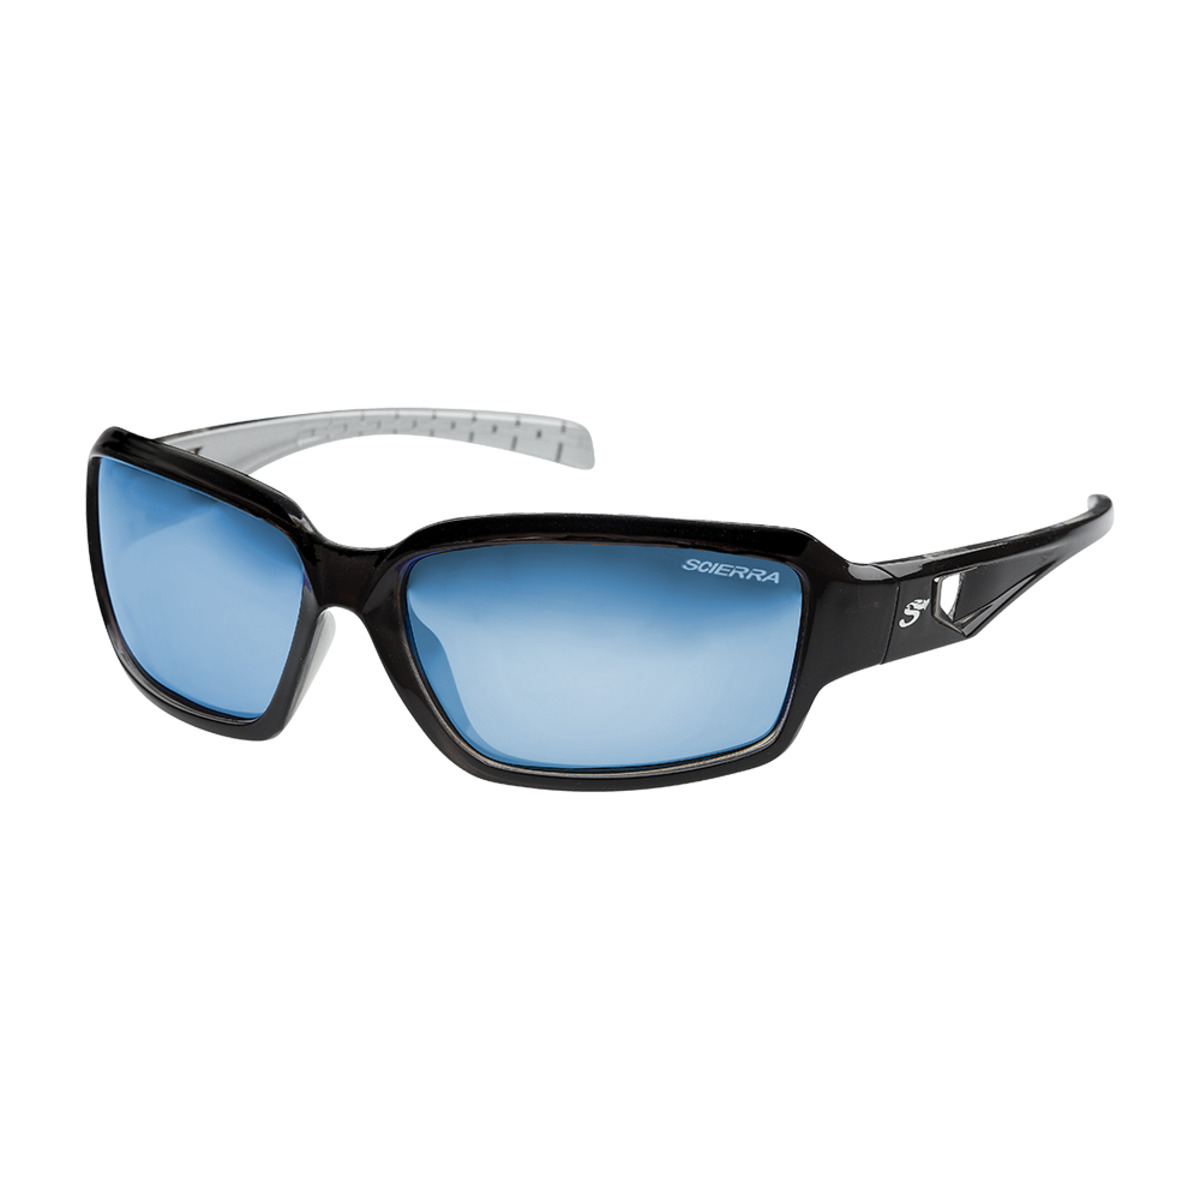 Scierra Street Wear Sunglasses Mirror - GREY/BLUE LENS